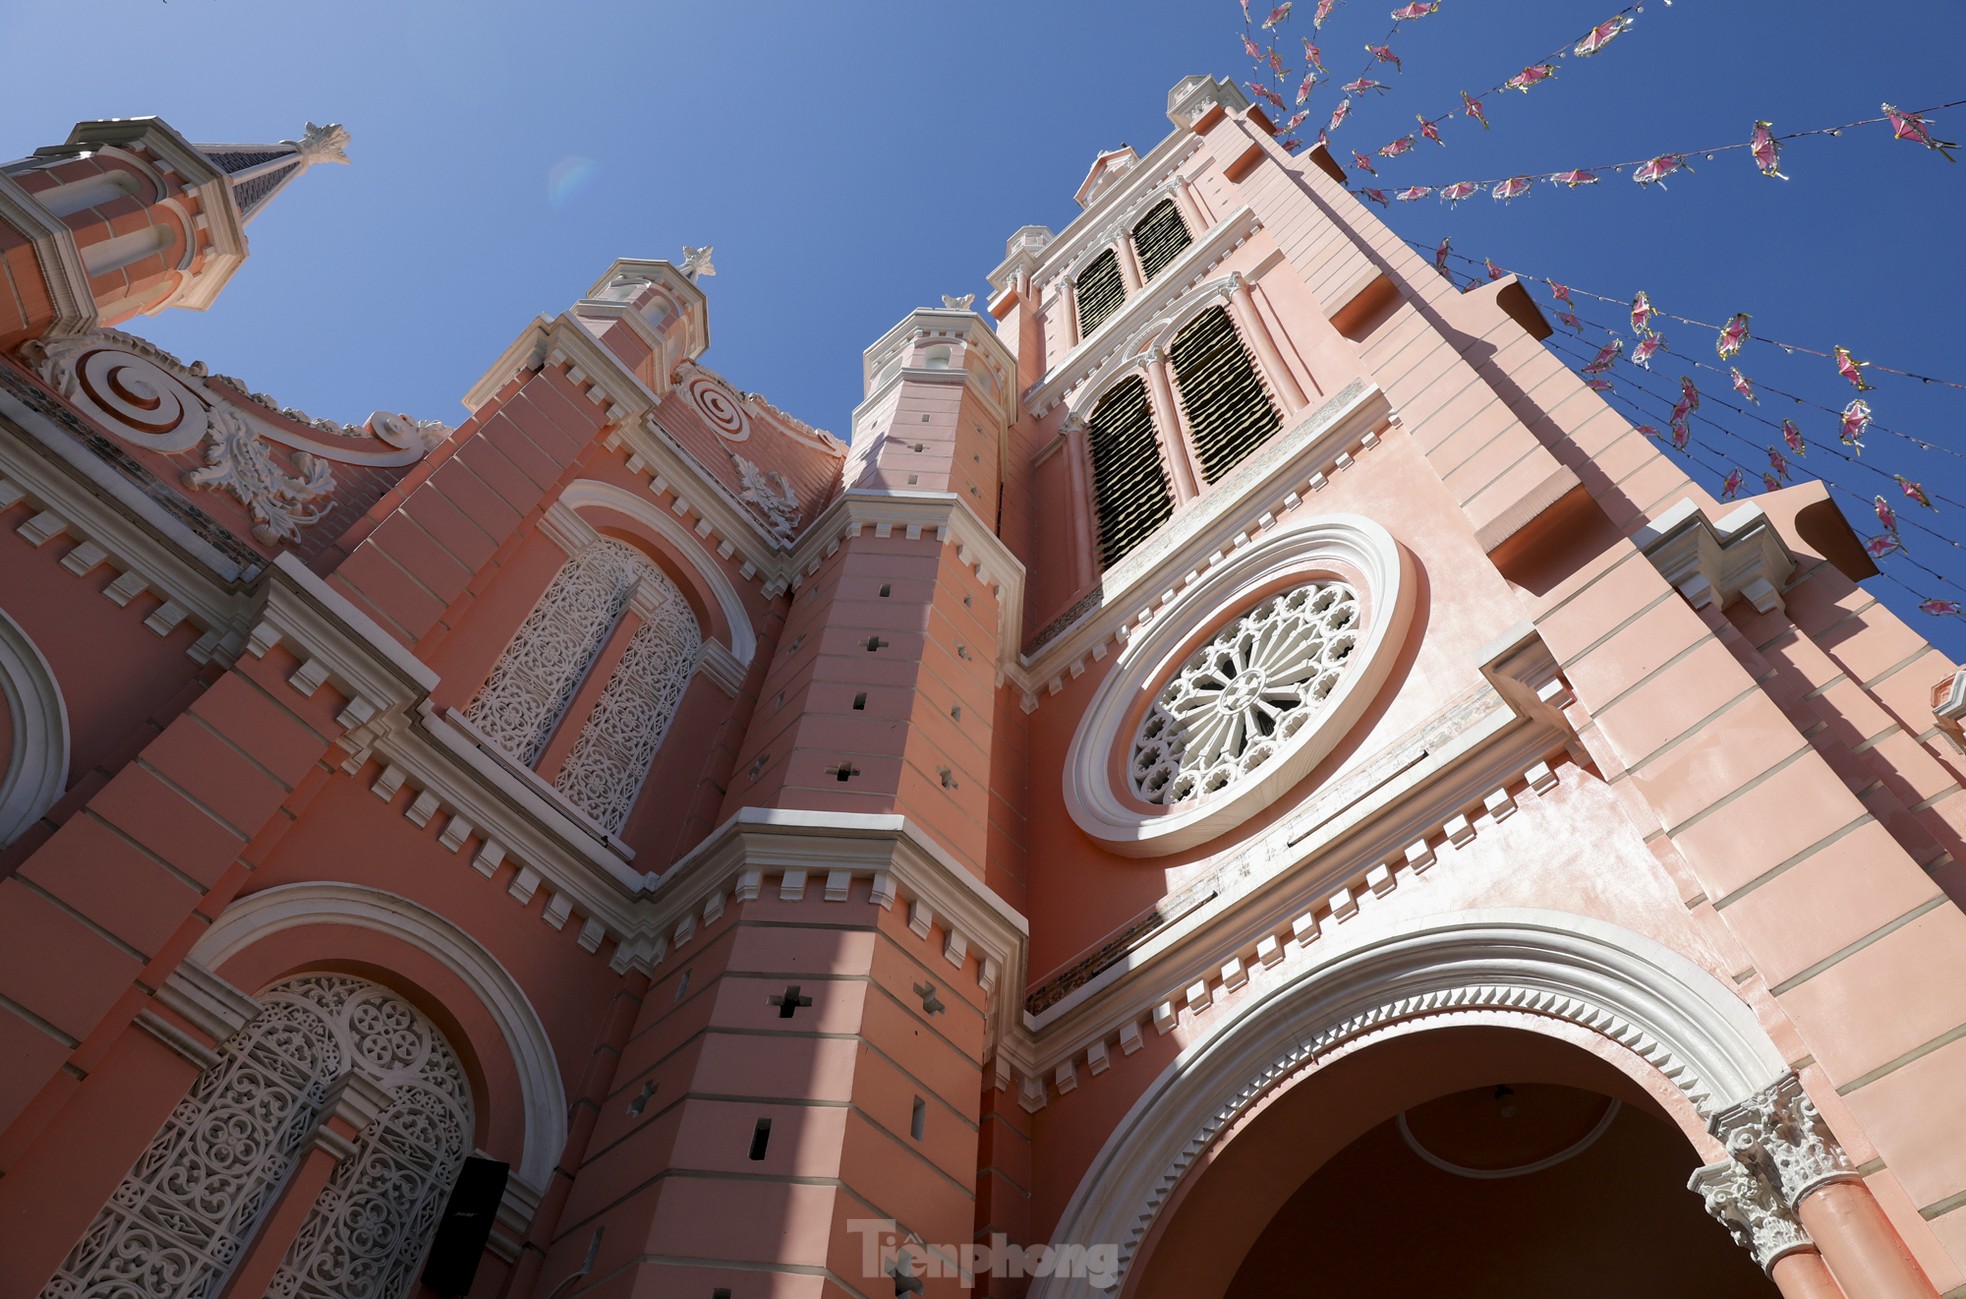 Chiêm ngưỡng kiến trúc nhà thờ màu hồng độc nhất ở TPHCM vừa lọt top điểm đến đẹp nhất thế giới - Ảnh 2.